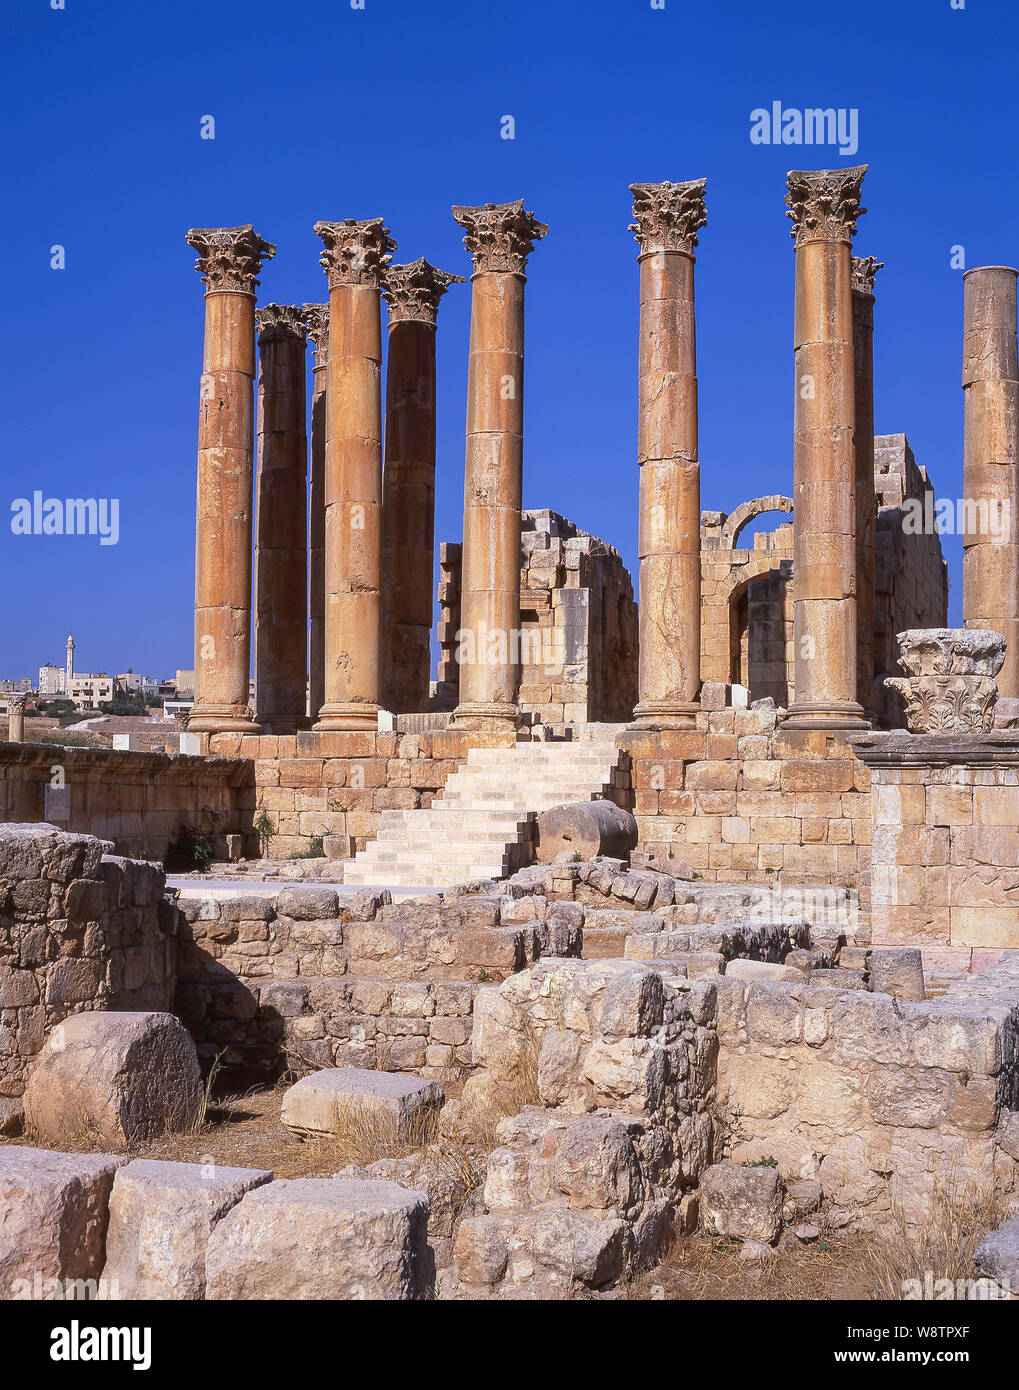 Columnas del templo de Artemis, la antigua ciudad de Jerash (Gerasa), Irbid, Maan, Reino de Jordania Foto de stock